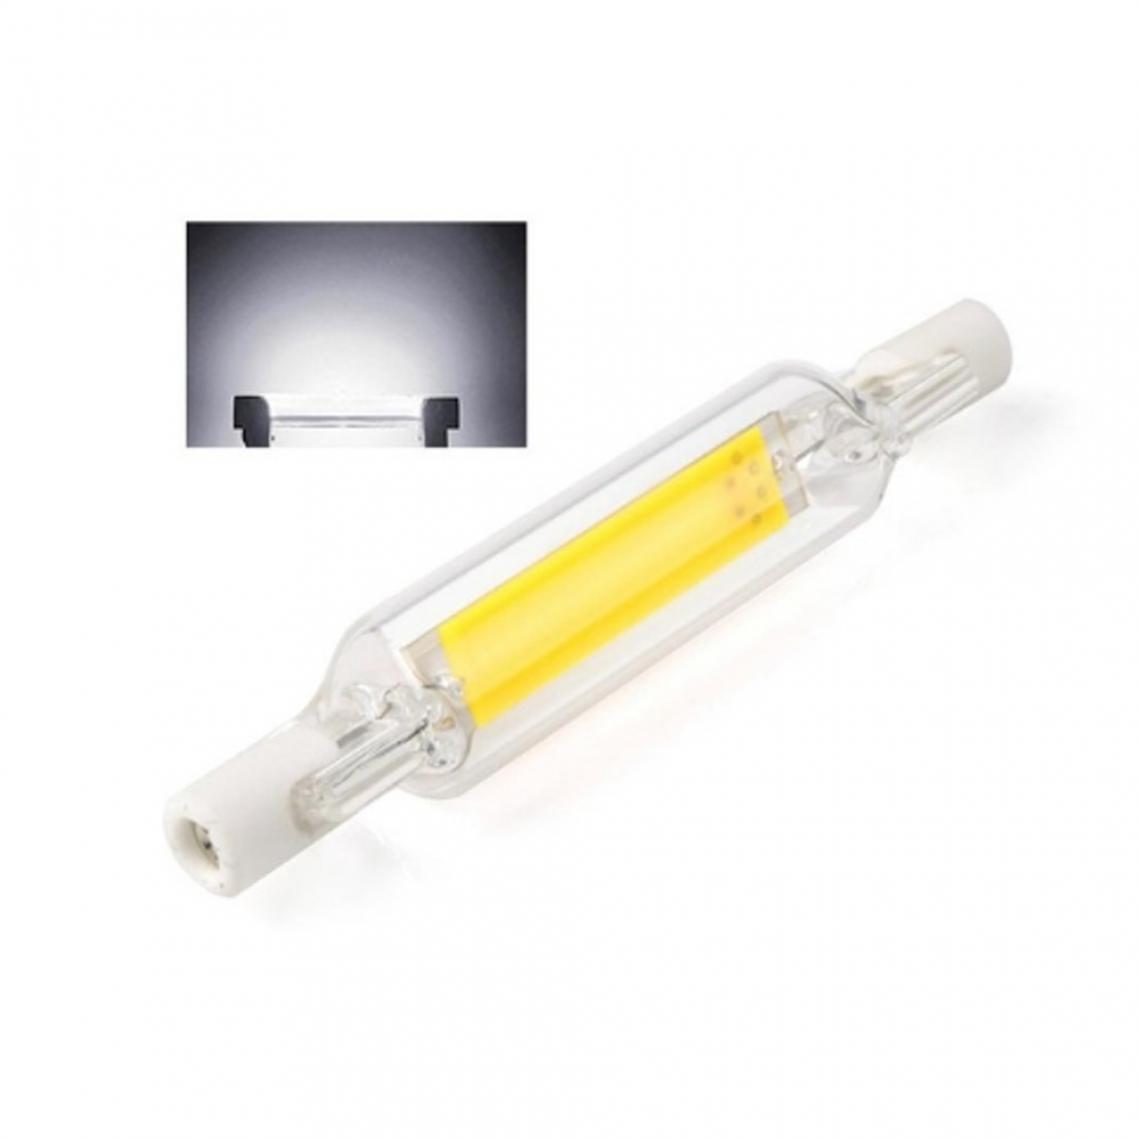 Wewoo - Tube en verre d'ampoule LED R7S 5W pour remplacer l'ampoule halogènelongueur de la lampe 78 mmAC 220v blanc froid - Tubes et néons